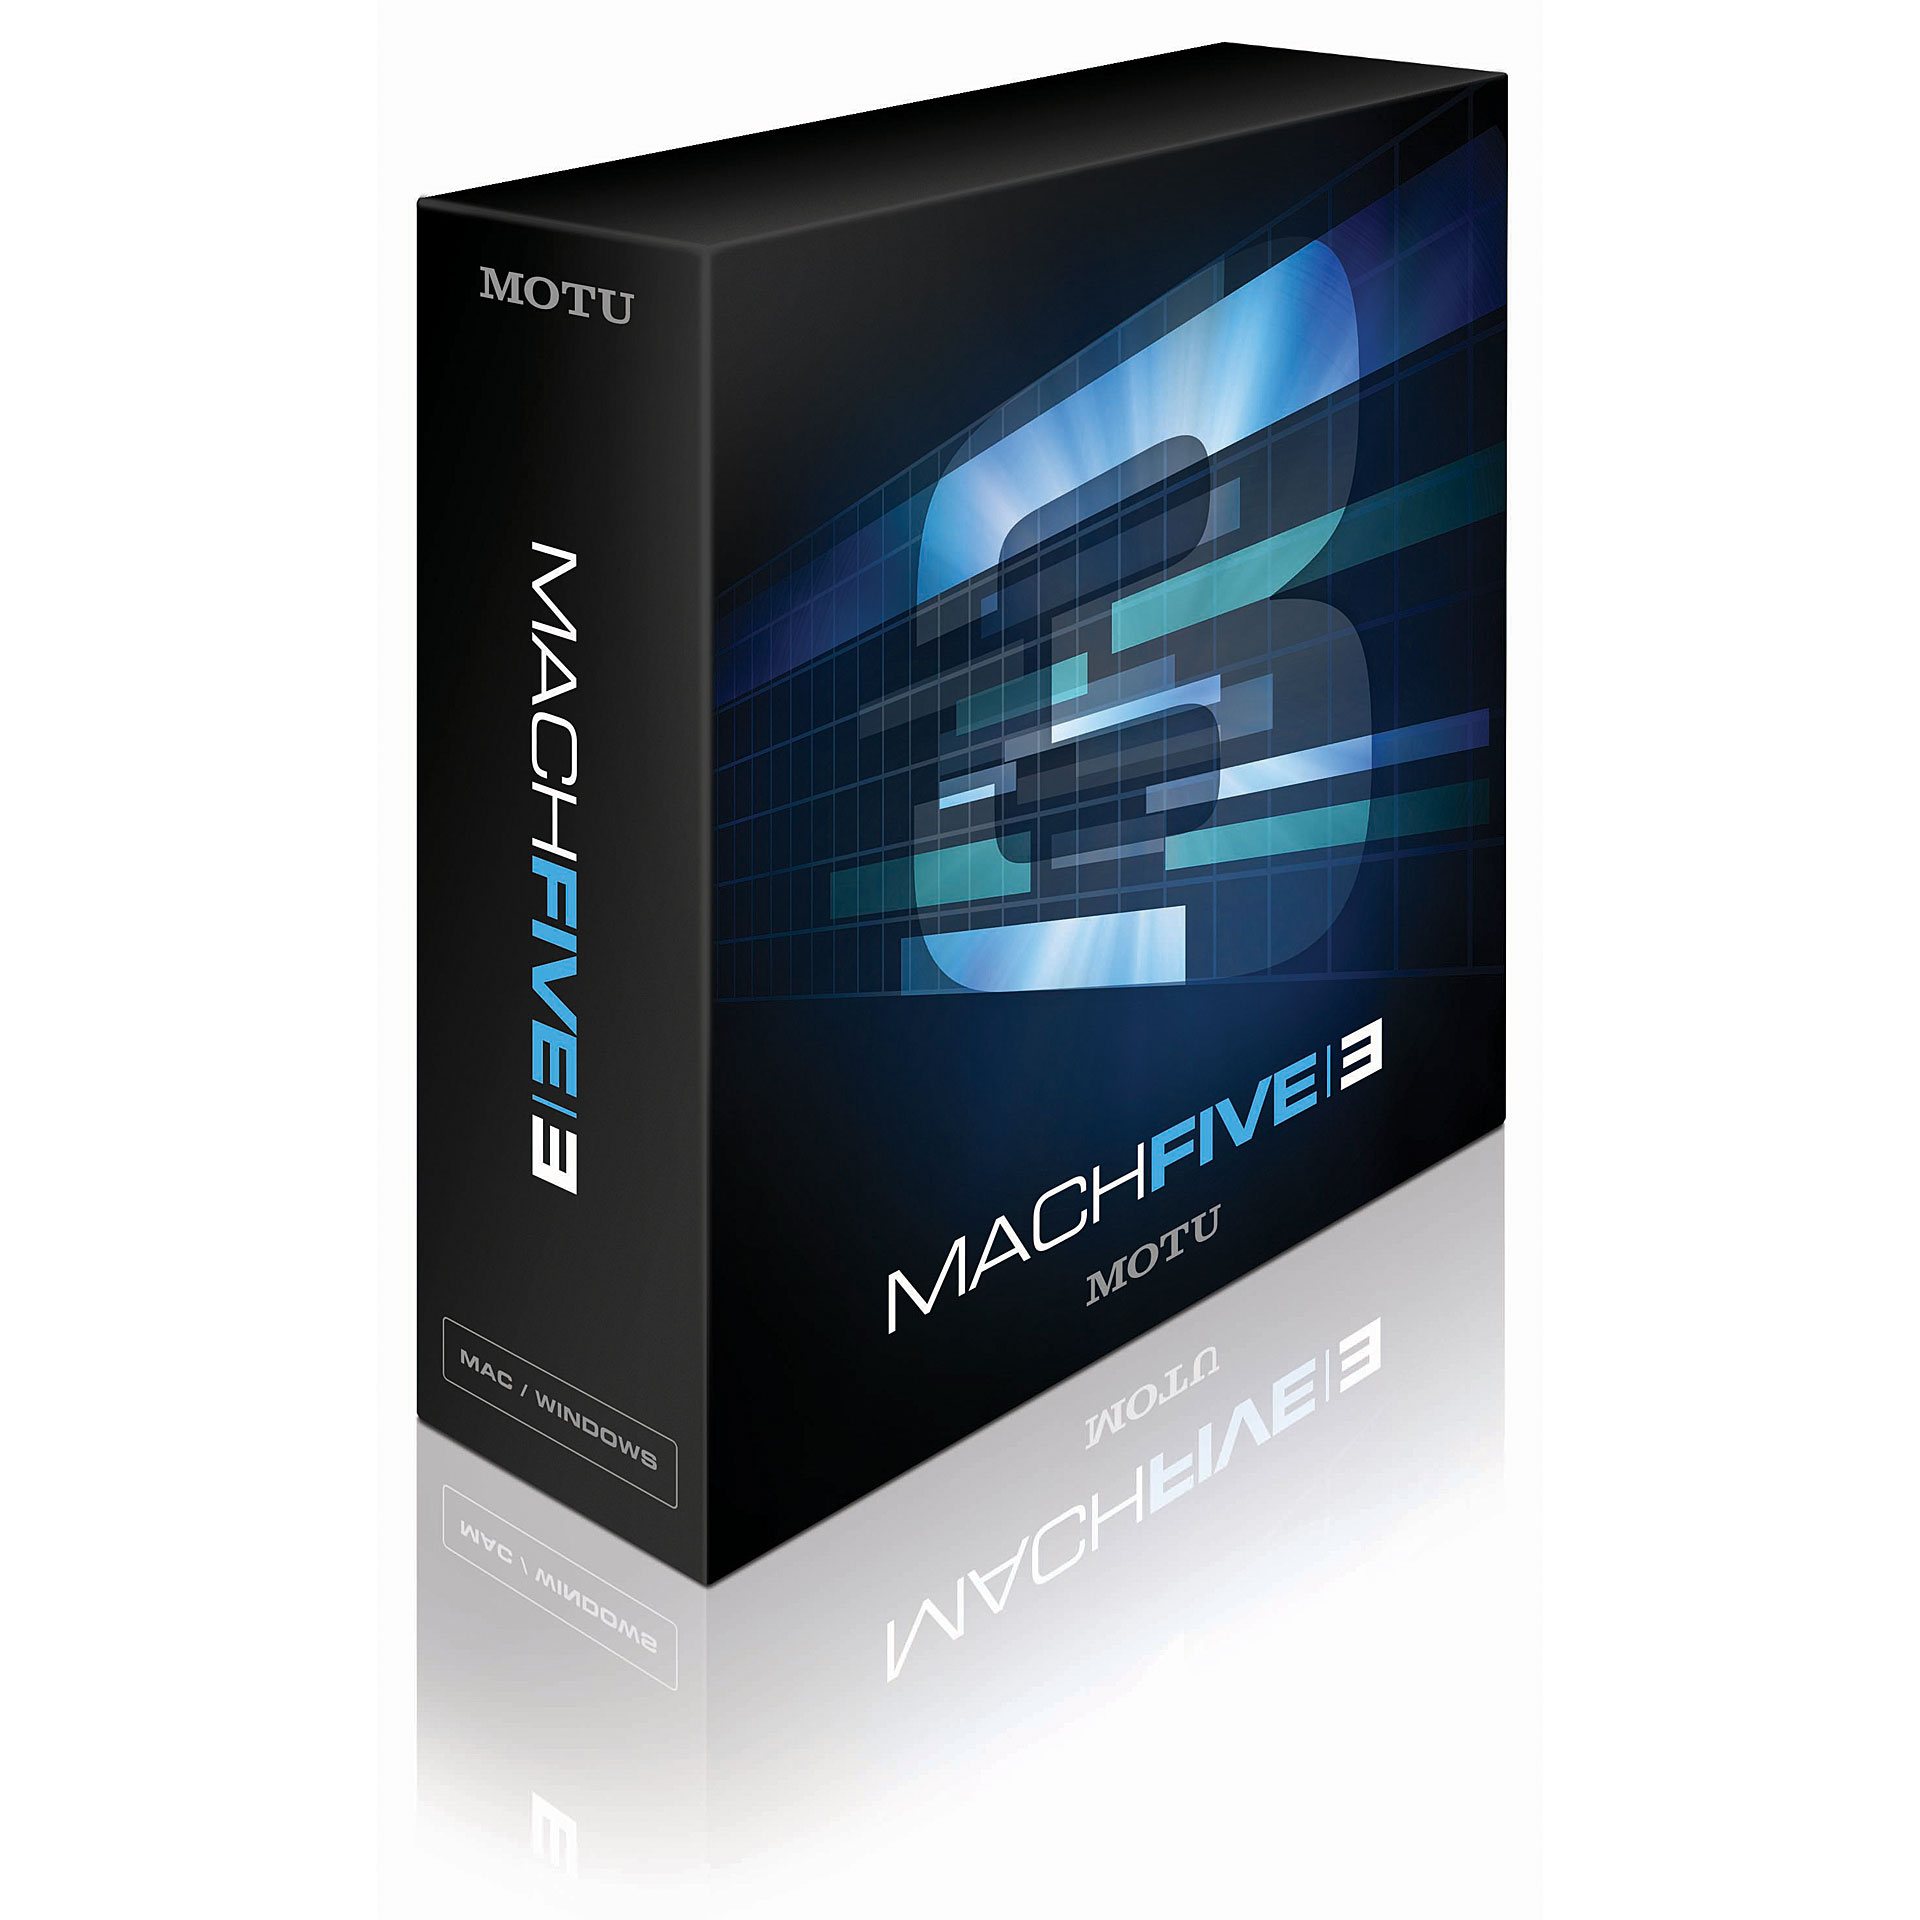 MOTU Mach Five 3 PC/MAC